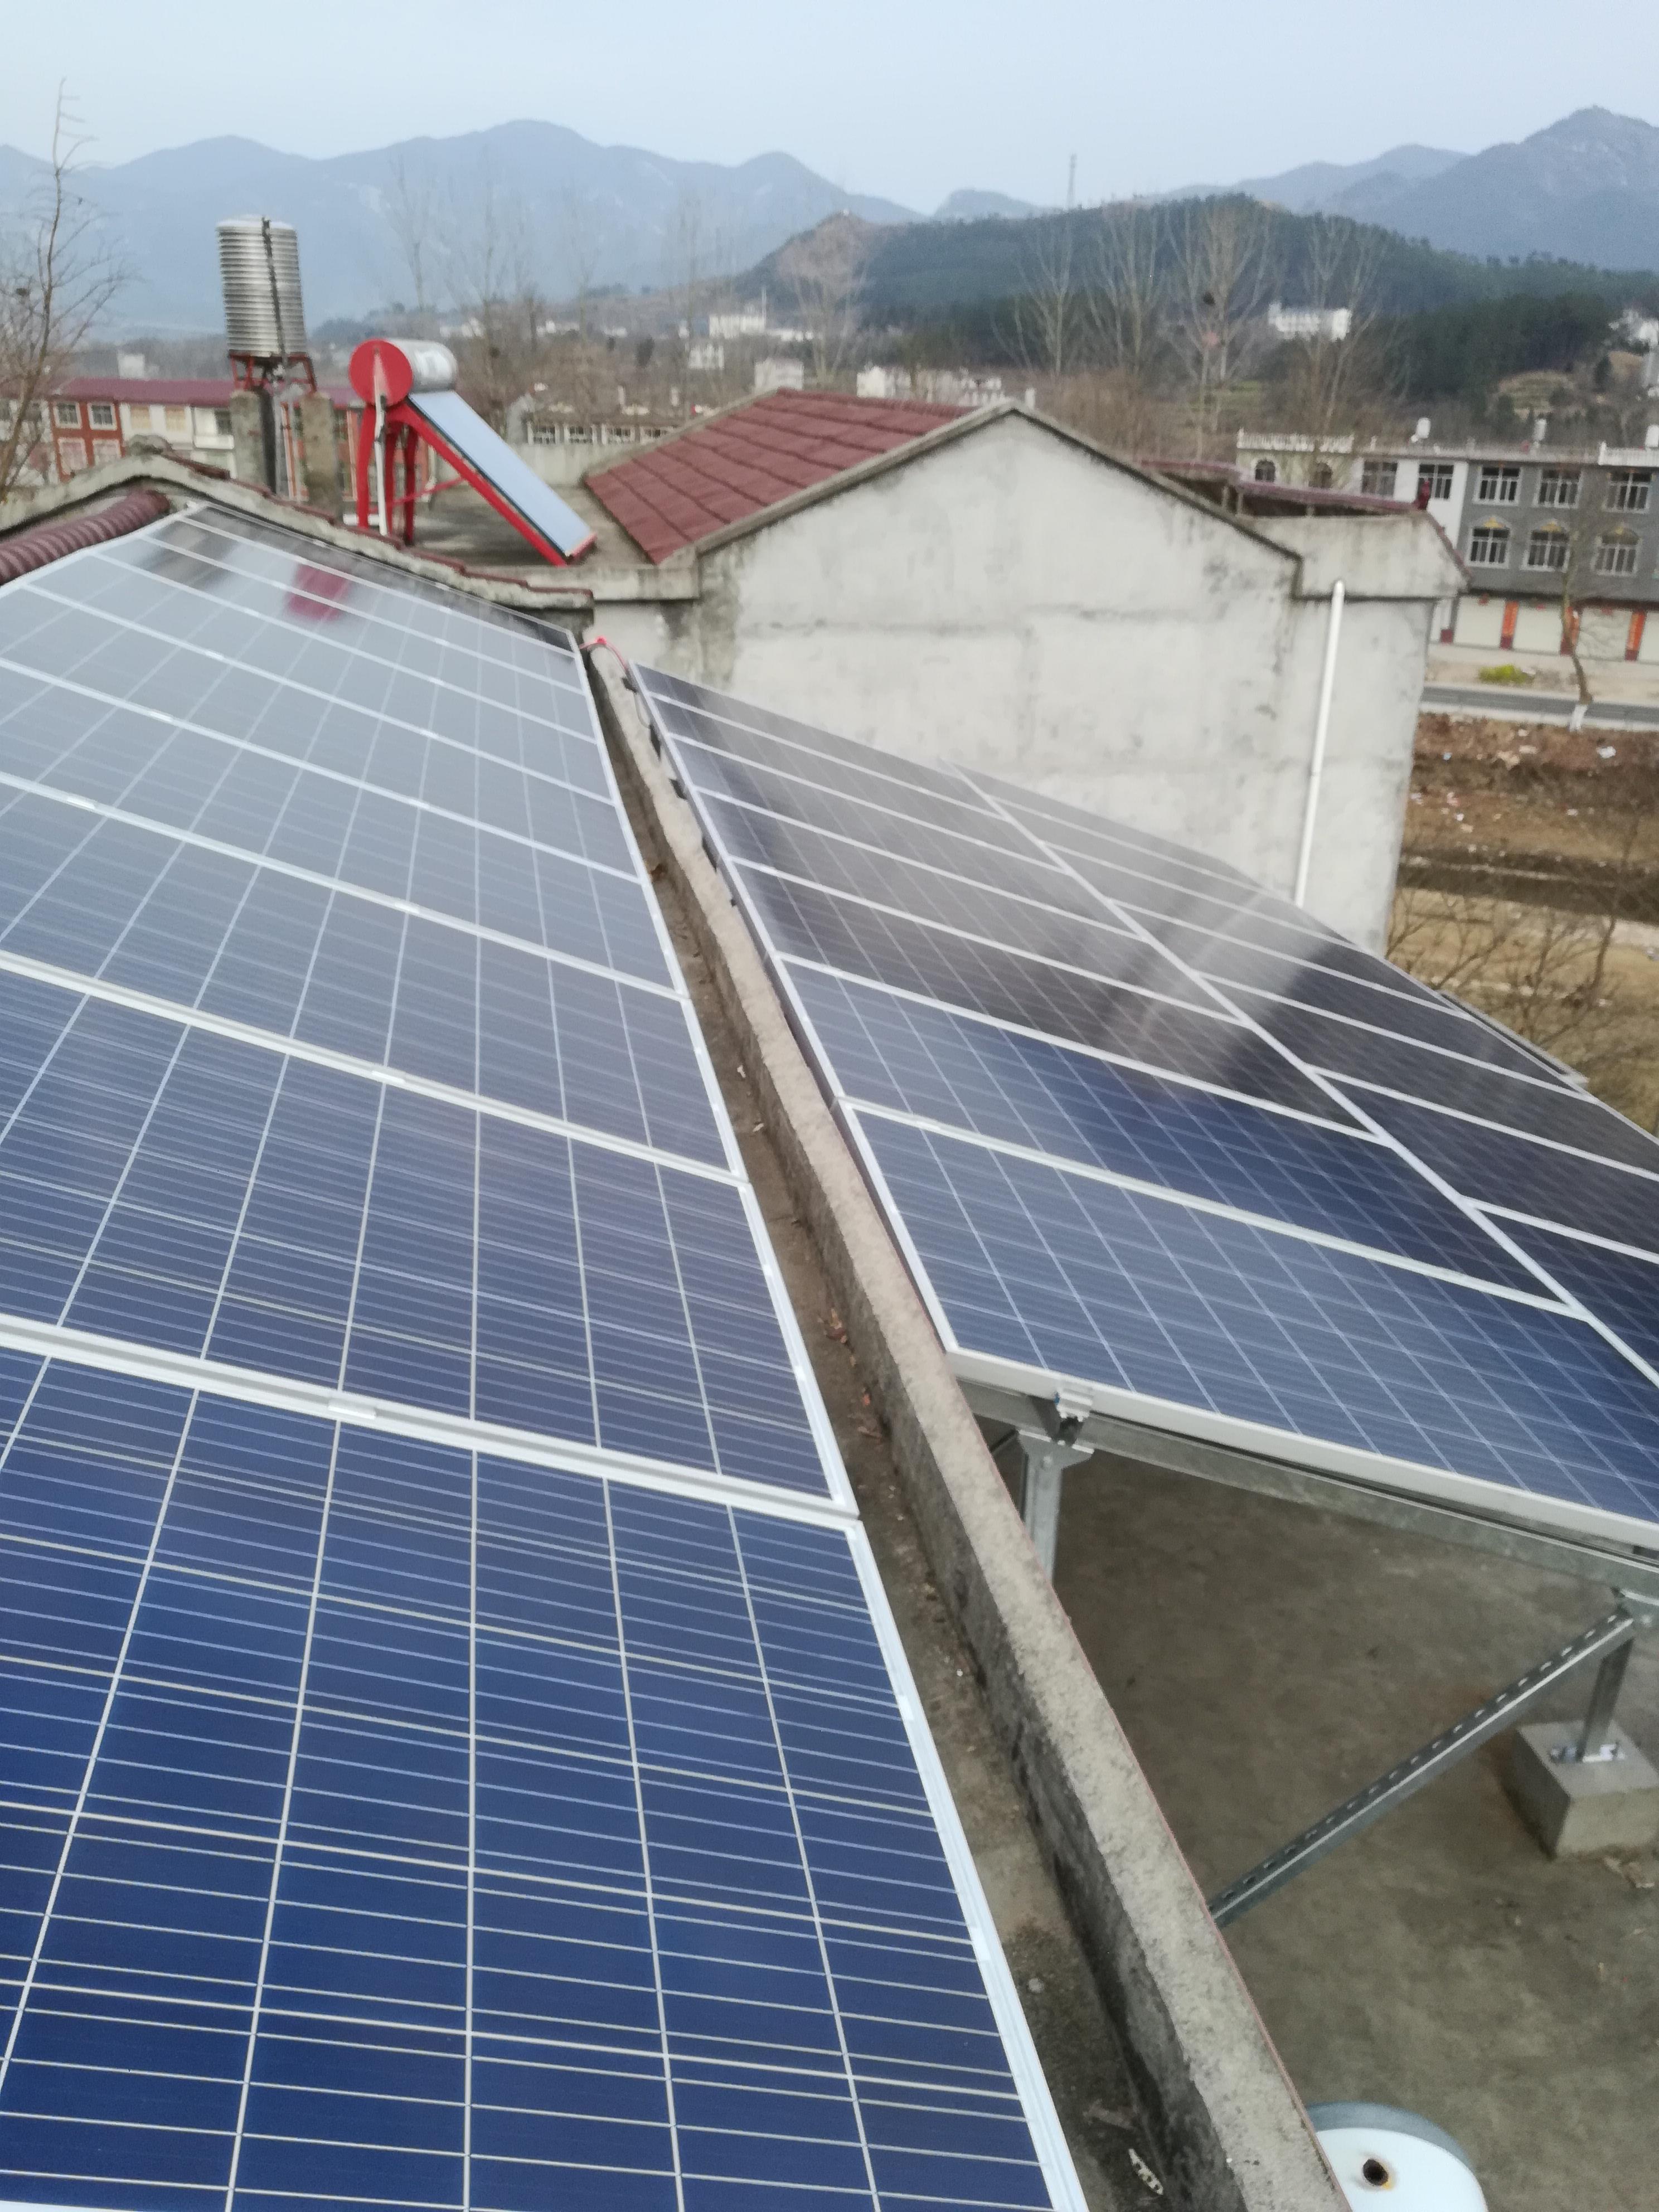 国家能源局,农业农村部,国家乡村振兴局表示:屋顶光伏发电项目将持续